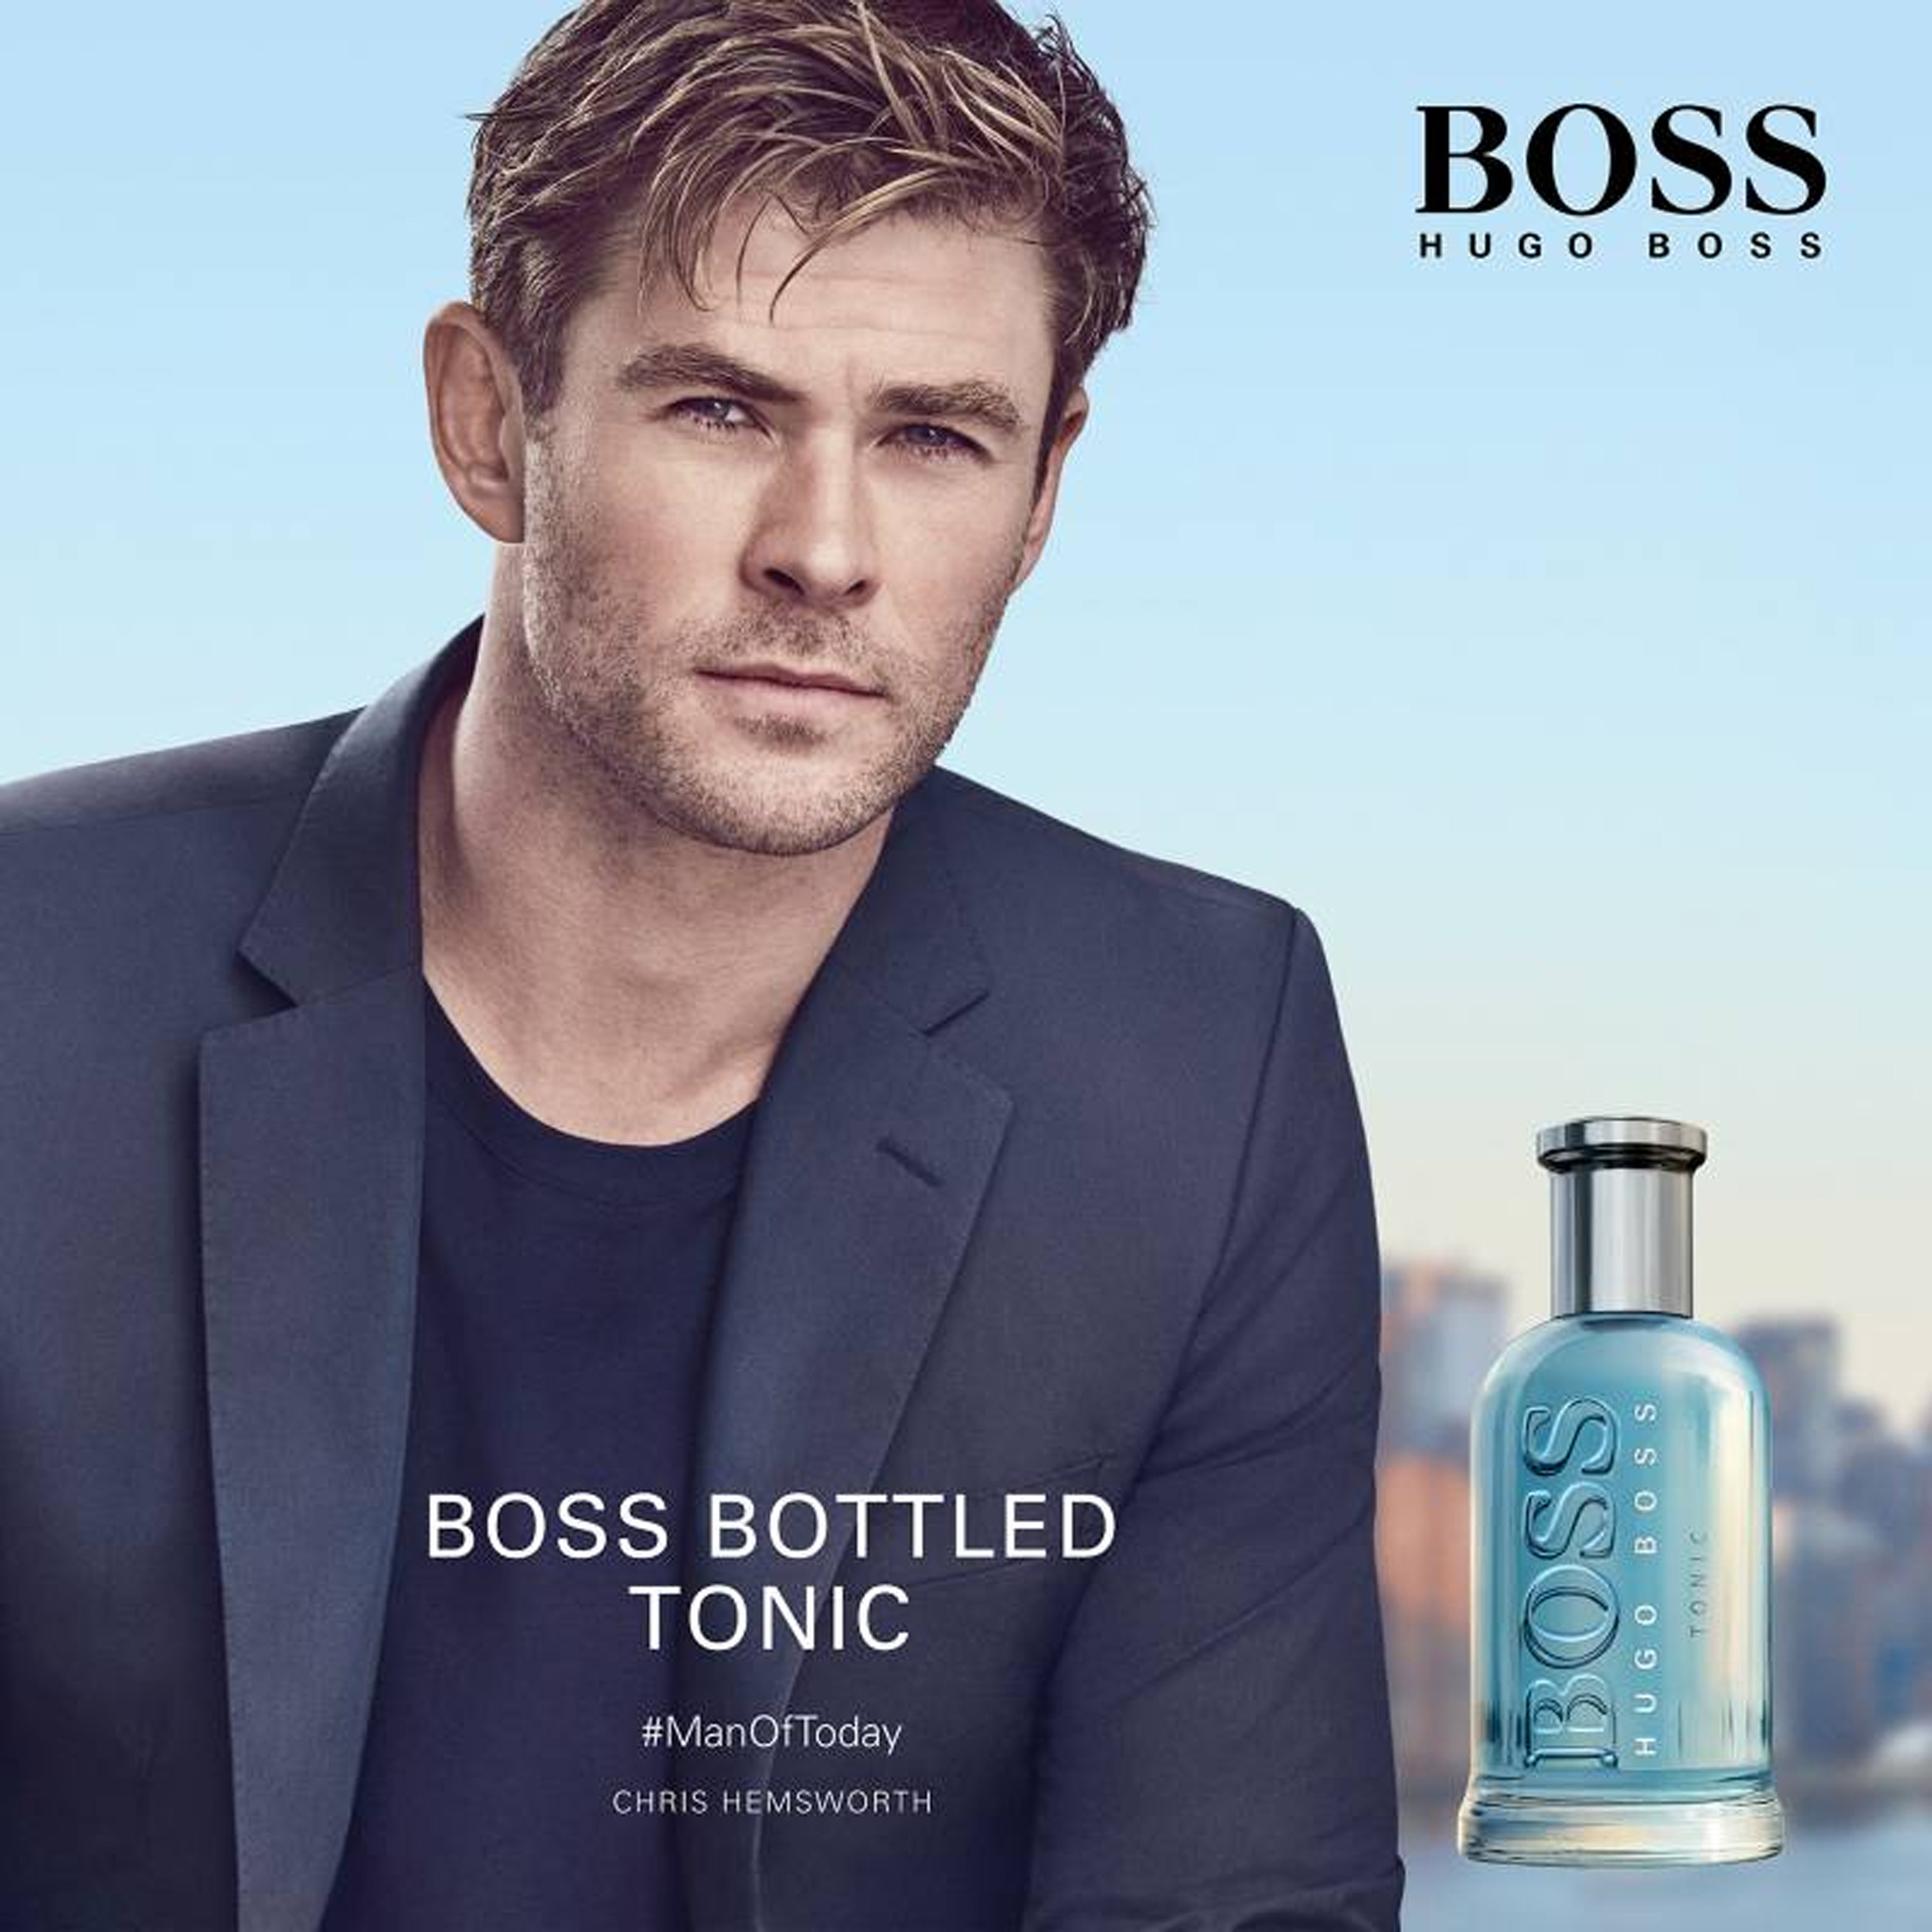 Boss Bottled Tonic Hugo Boss  (Replica Con Fragancia Importada)- Hombre